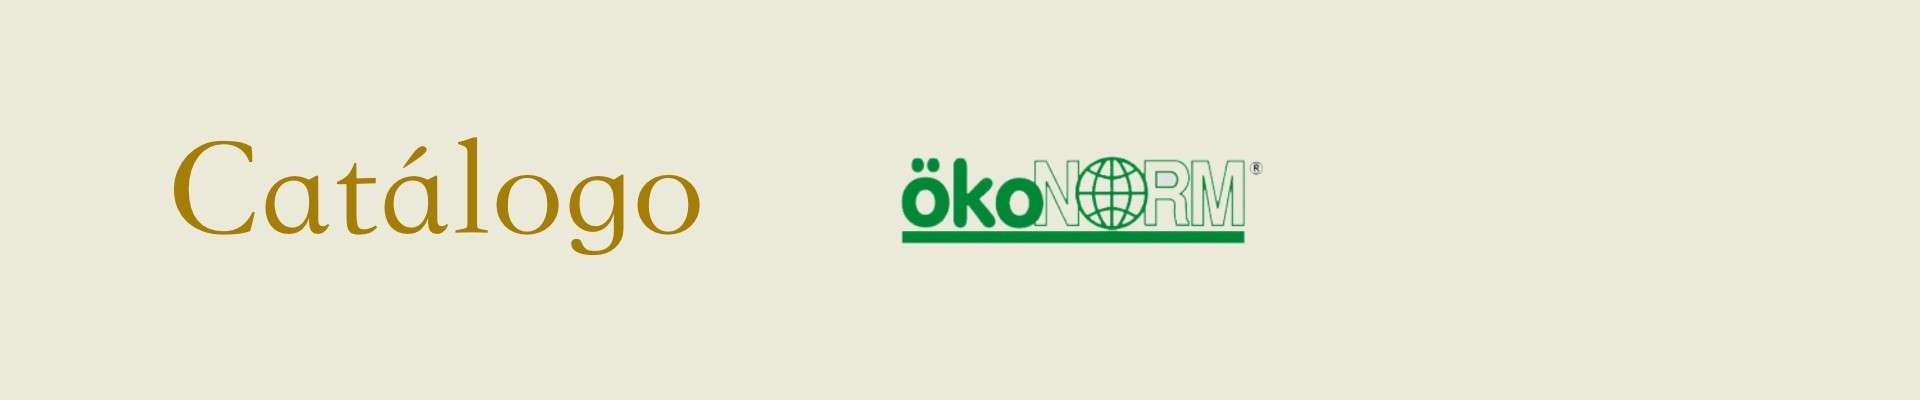 Comprar juguetes educativos para niños de la marca Okonorm | Veobio